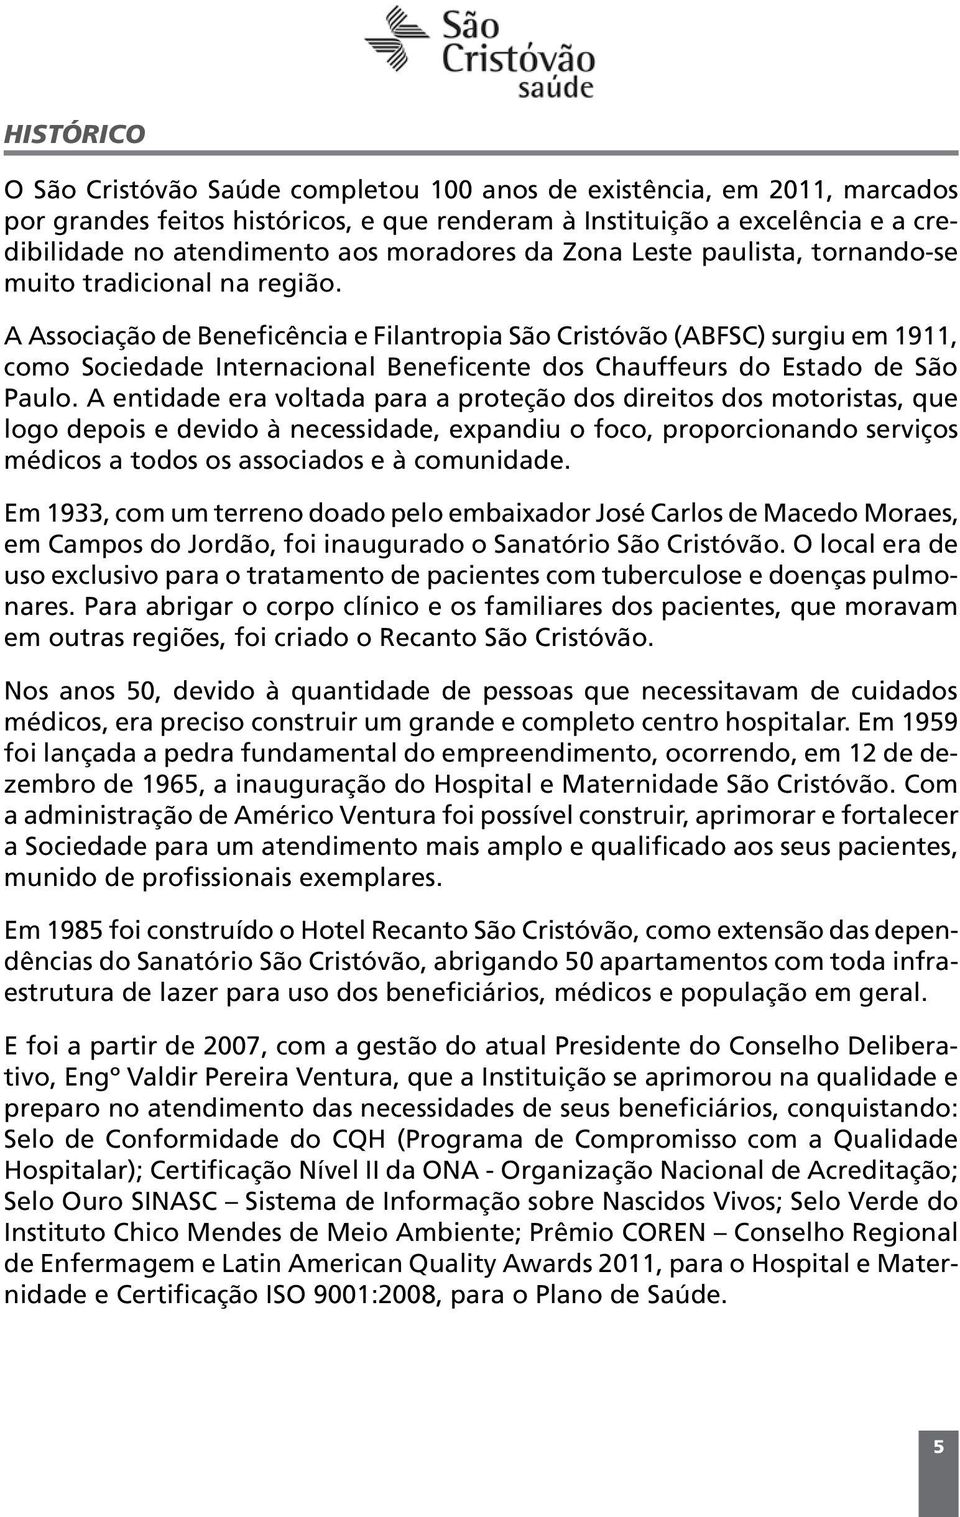 A Associação de Beneficência e Filantropia São Cristóvão (ABFSC) surgiu em 1911, como Sociedade Internacional Beneficente dos Chauffeurs do Estado de São Paulo.